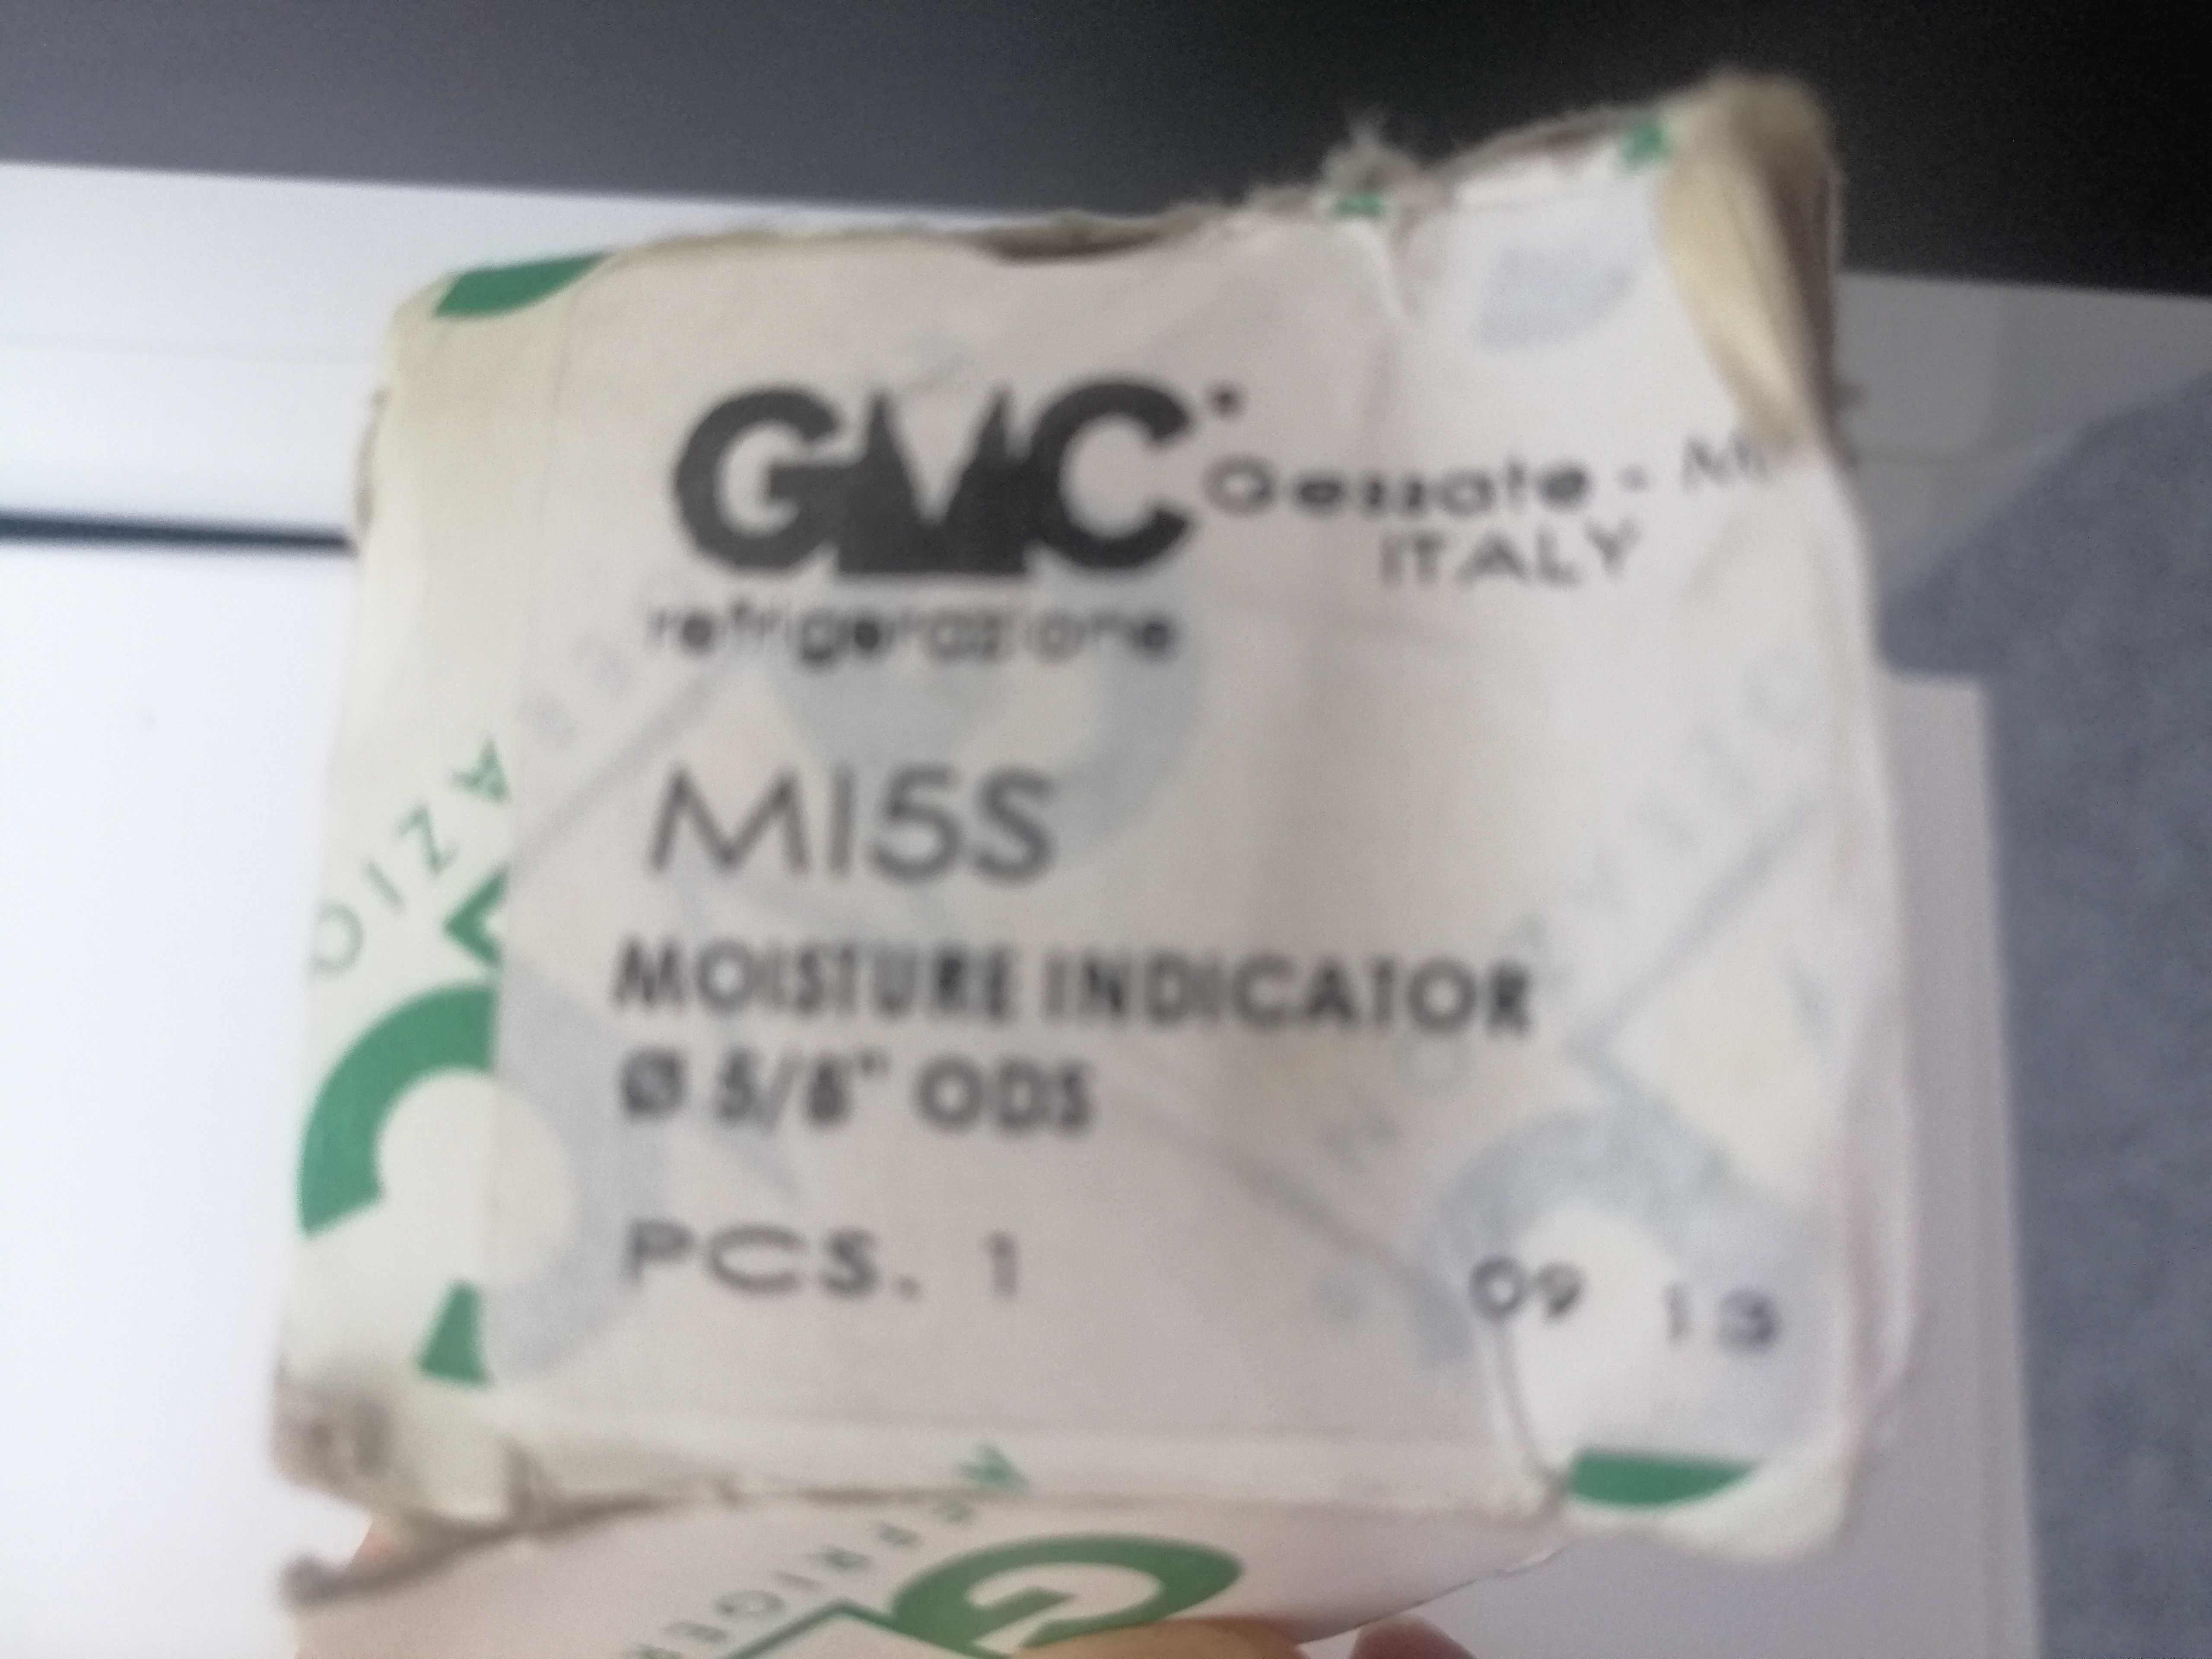 Wziernik cieczy z indykatorem MI5S 5/8" 16mm